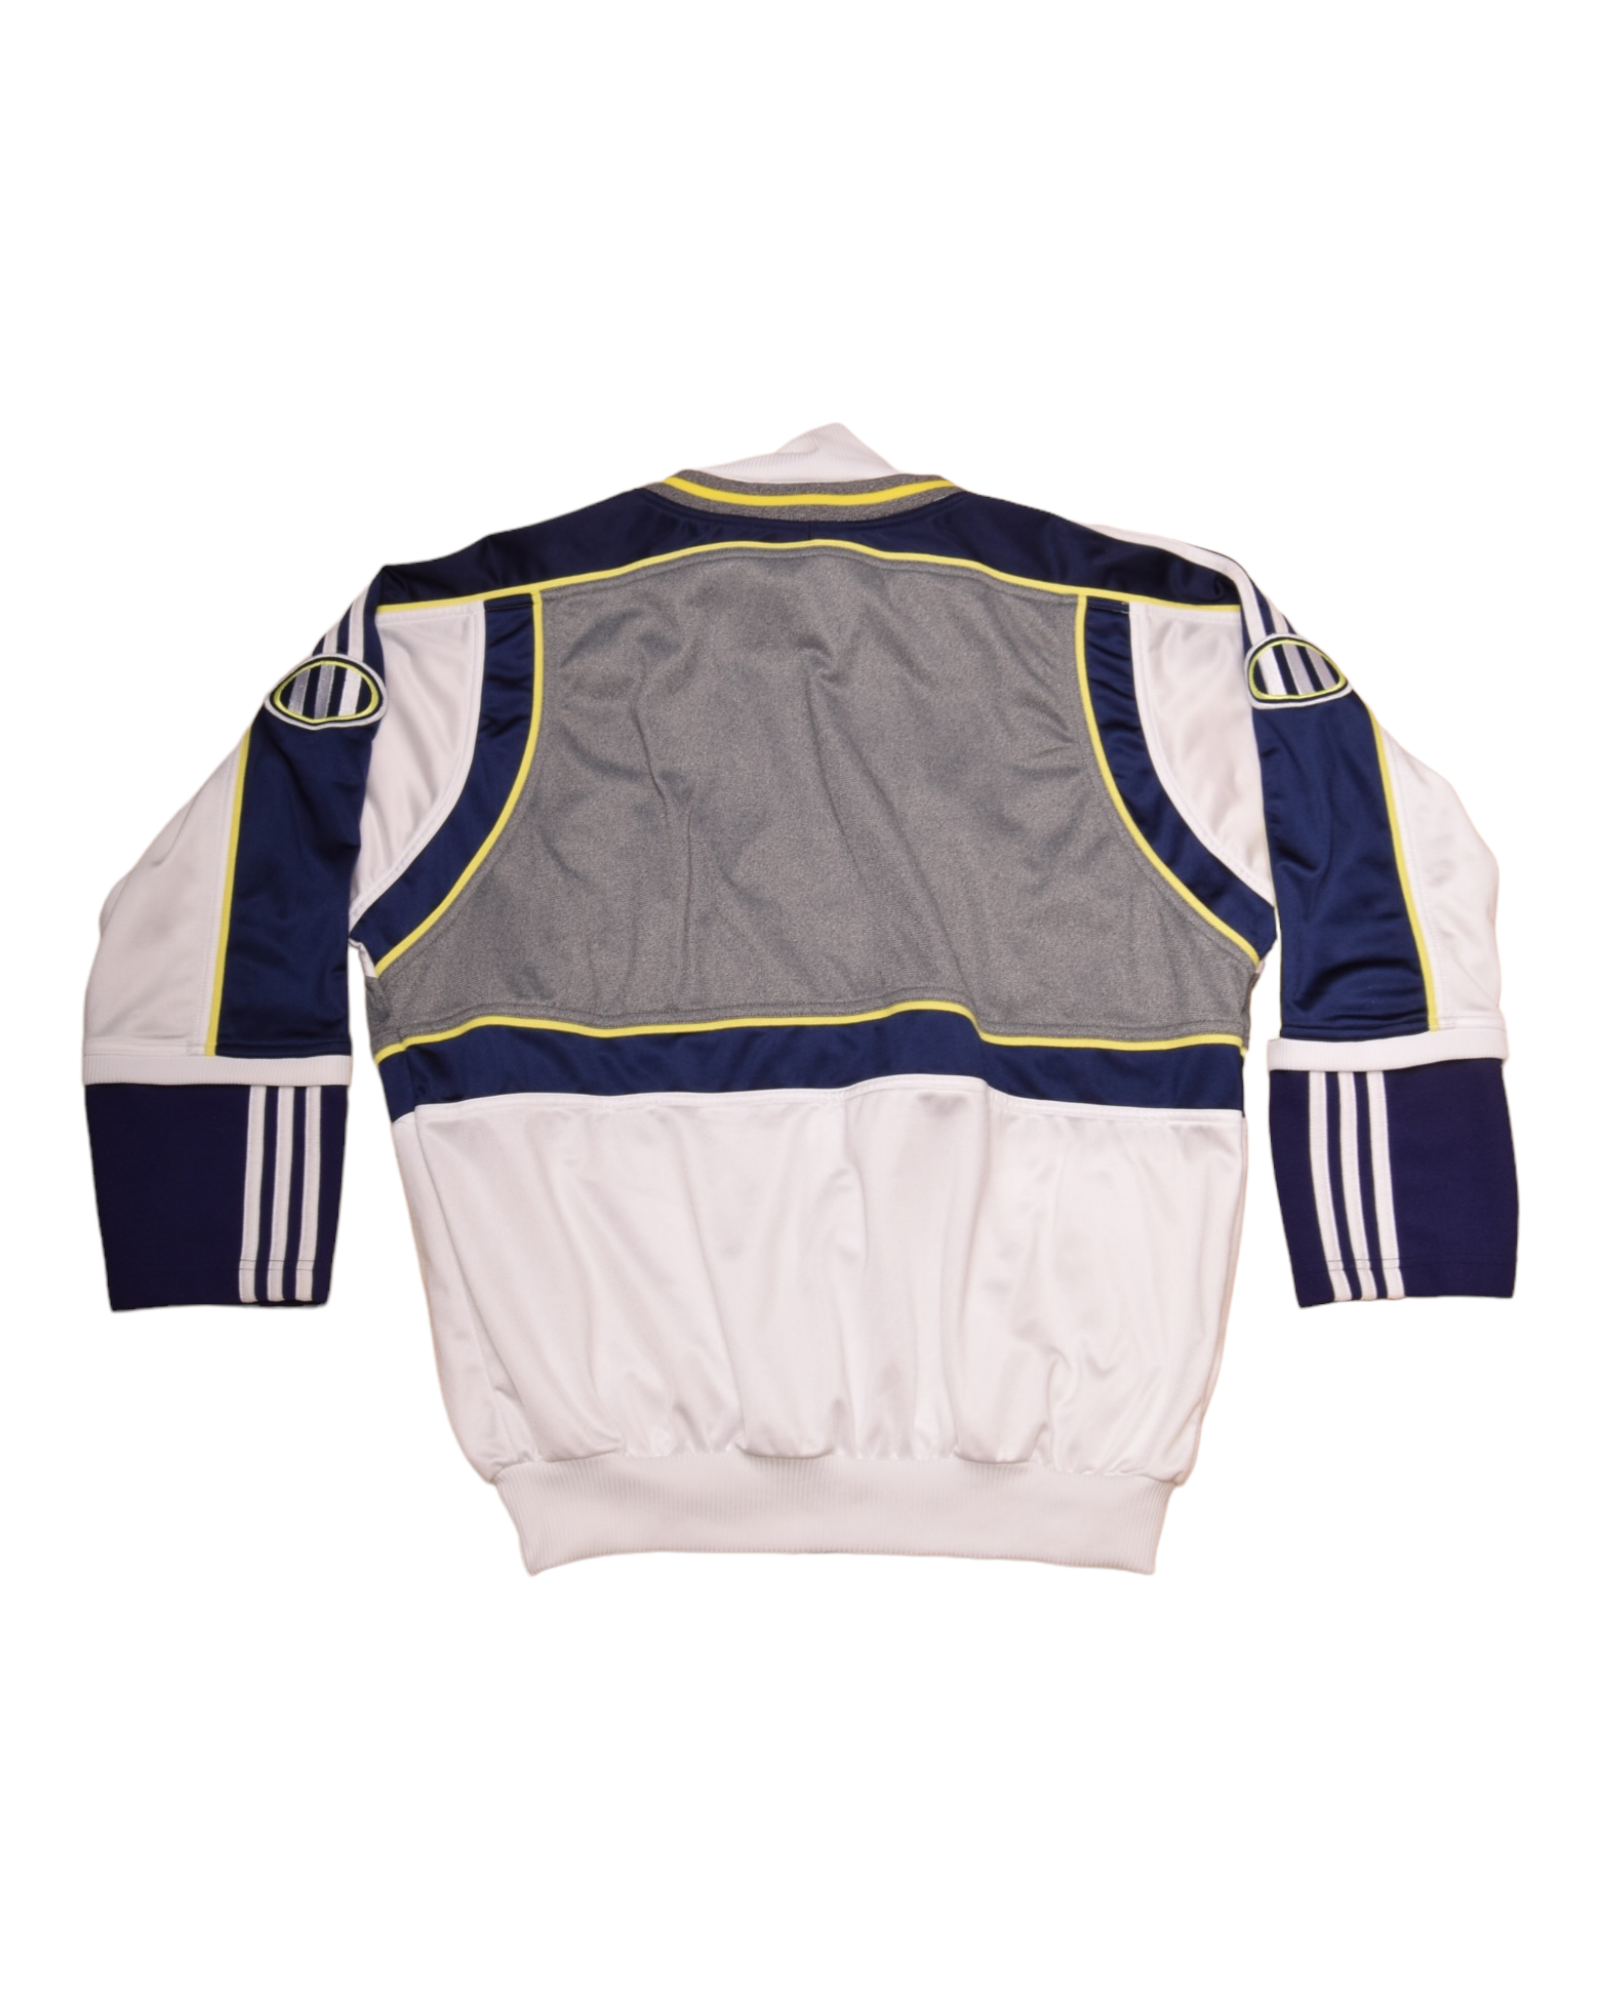 Vintage 90's Adidas Jacket Size M White Blue